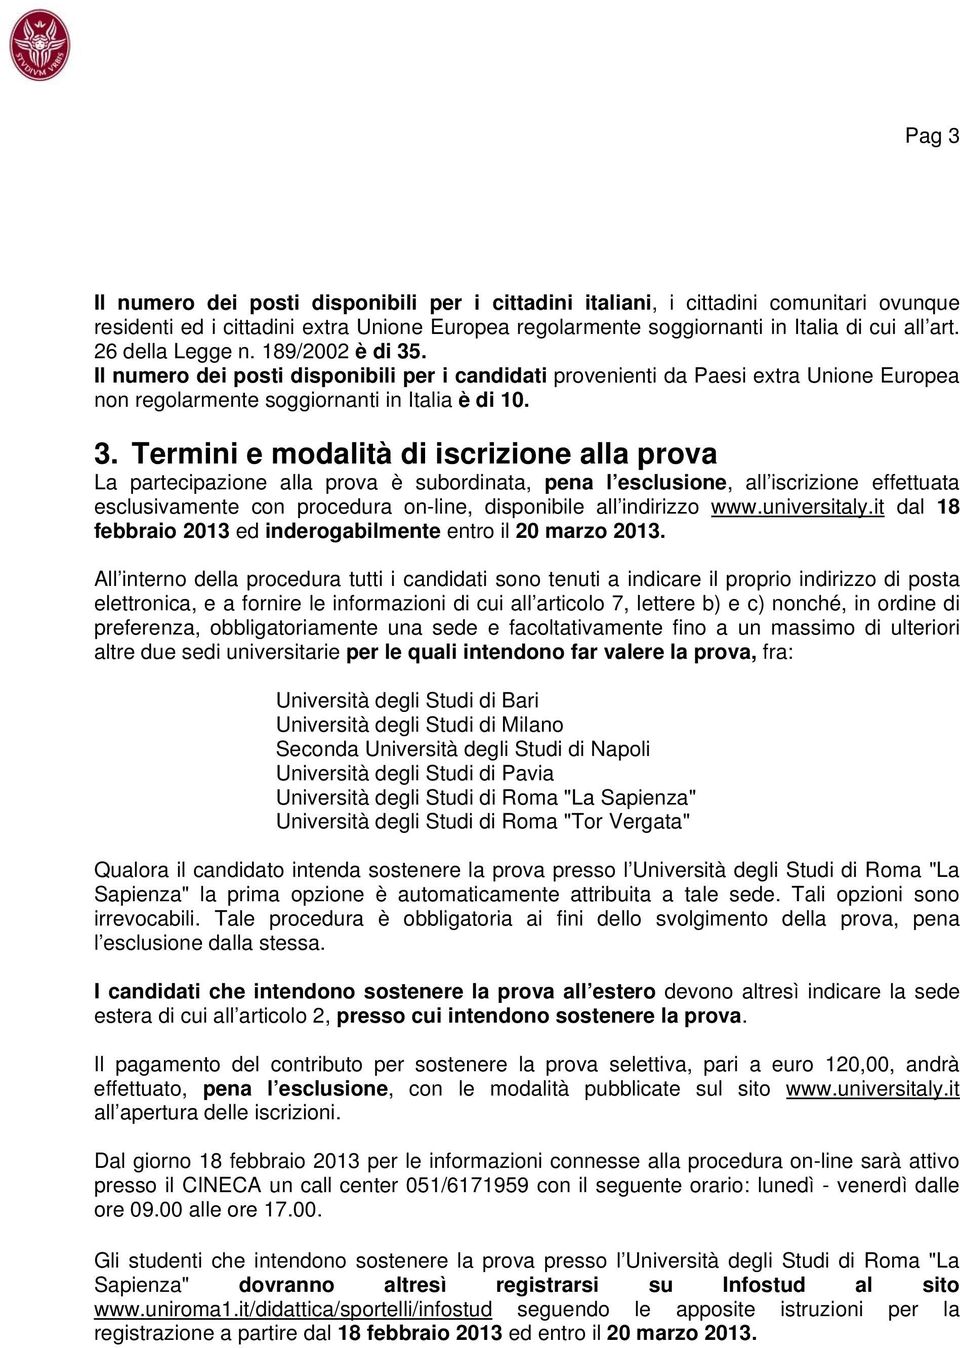 . Il numero dei posti disponibili per i candidati provenienti da Paesi extra Unione Europea non regolarmente soggiornanti in Italia è di 10. 3.